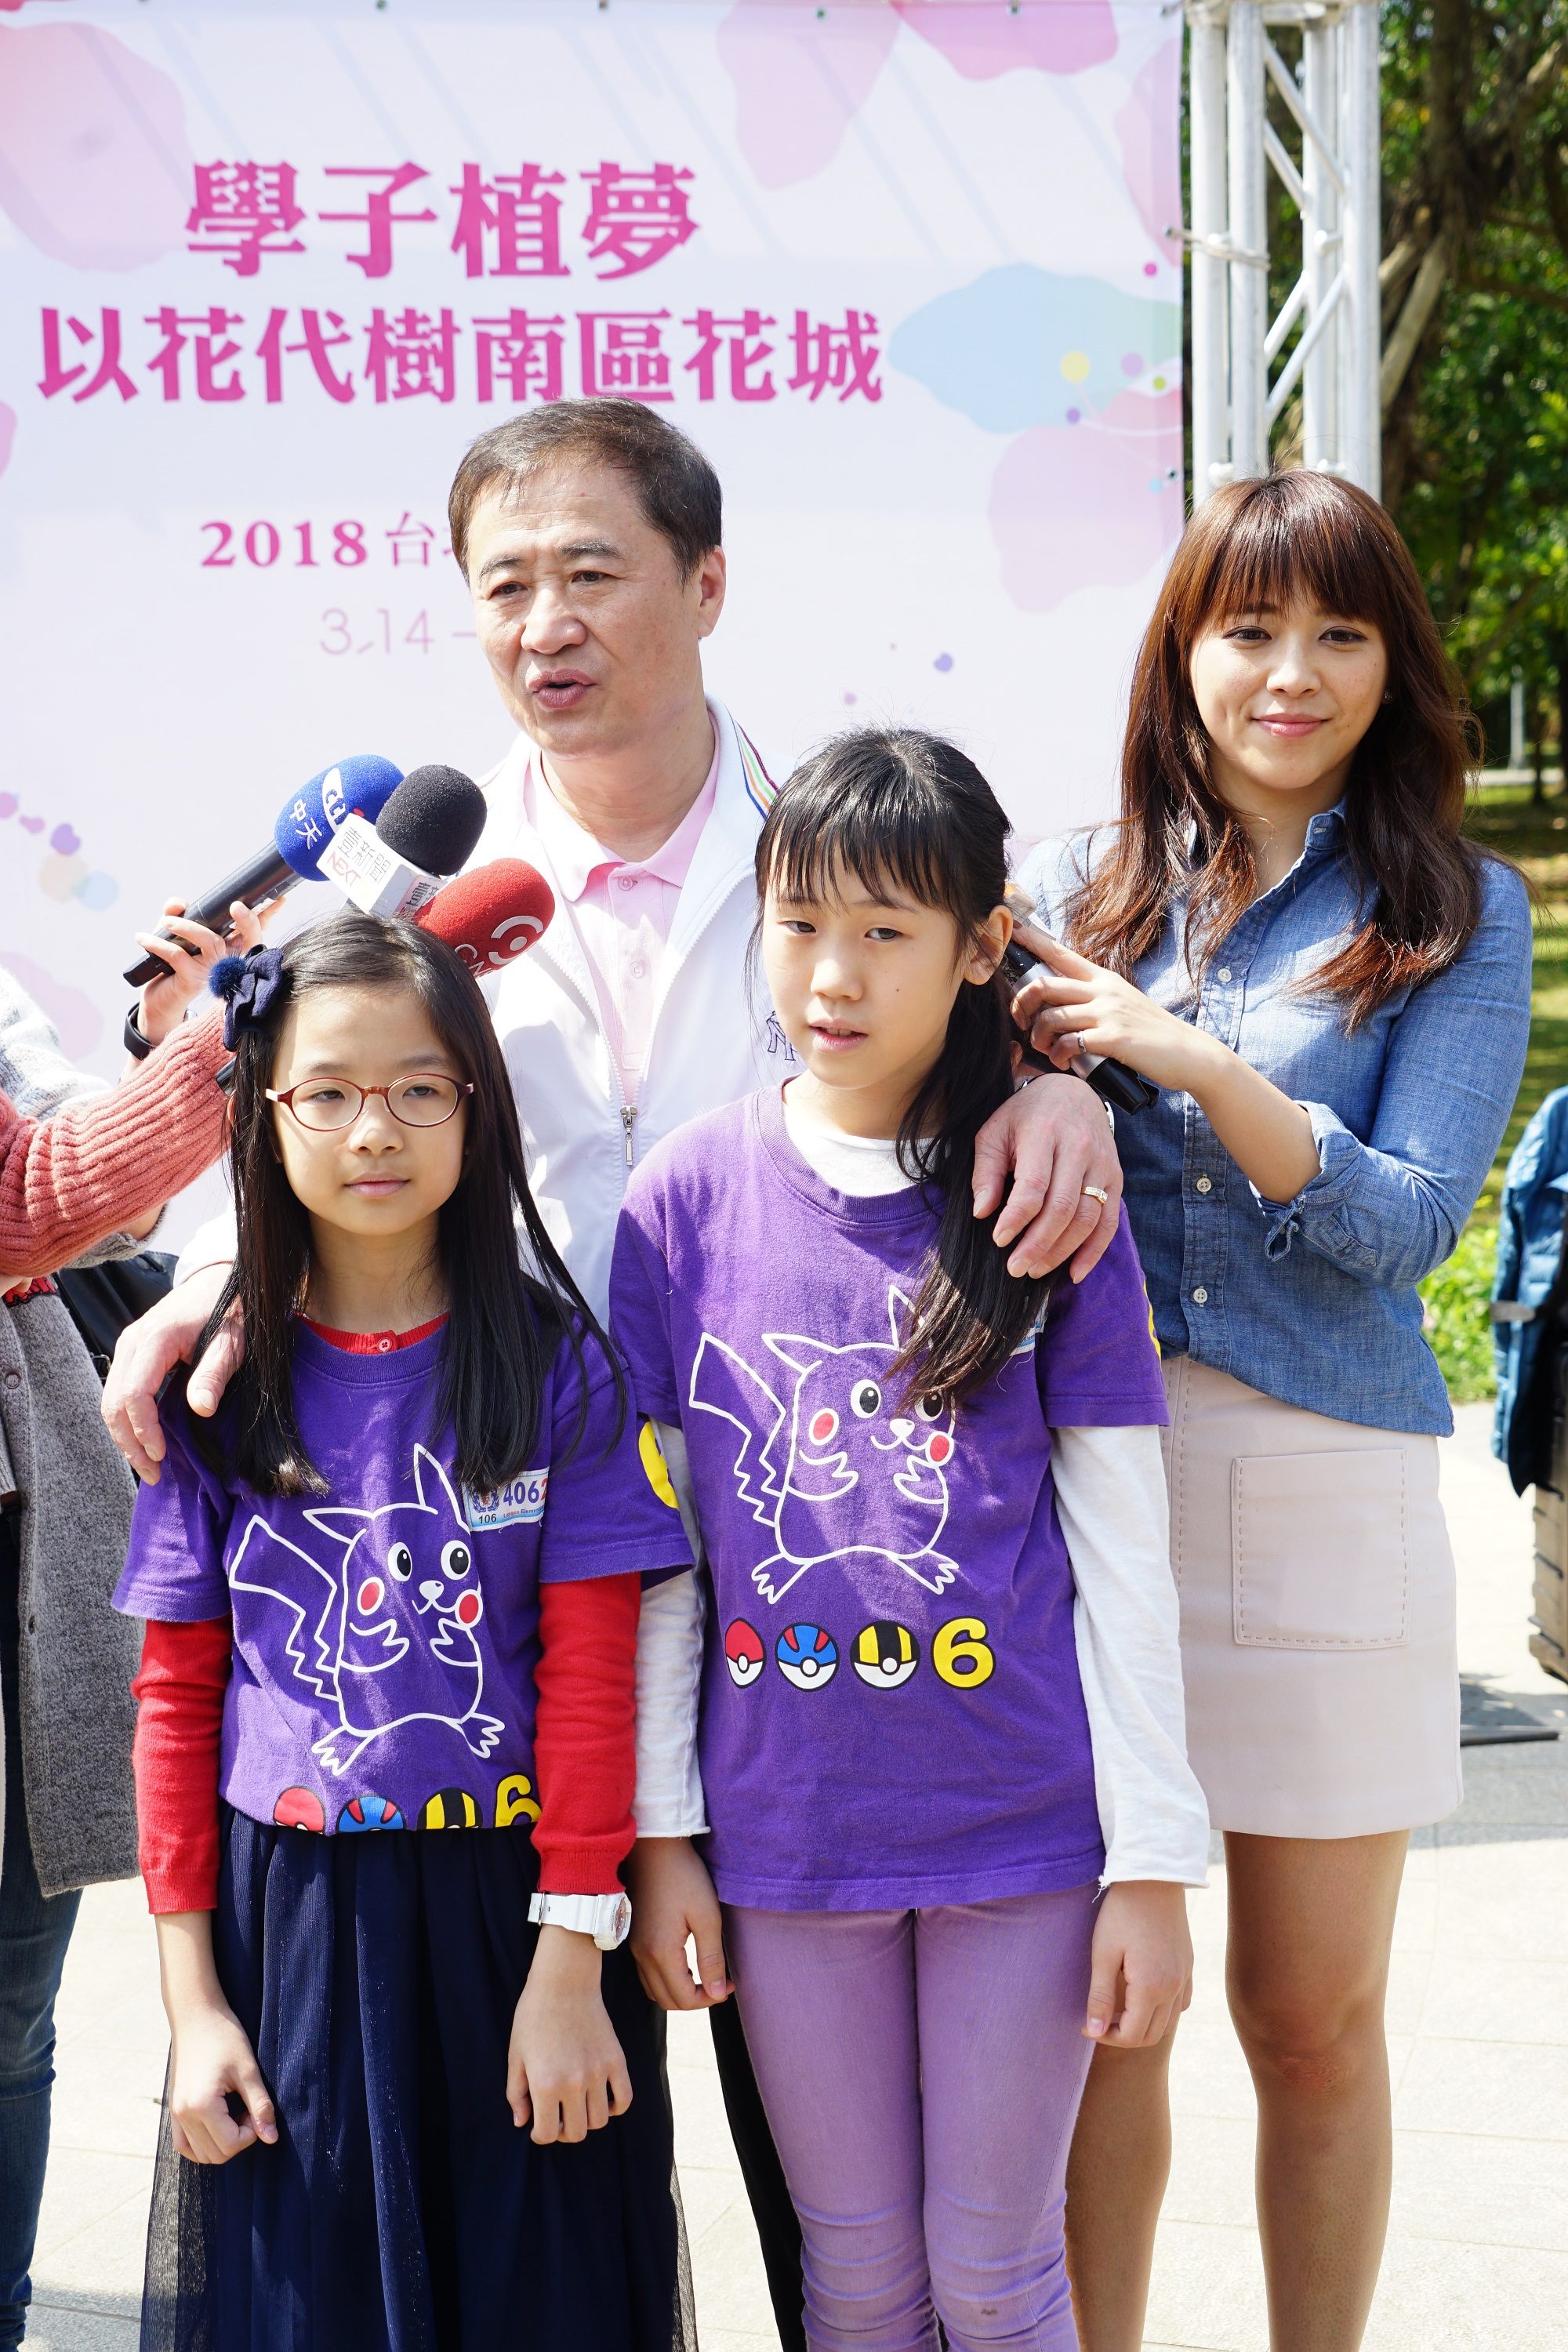 陈景峻副市长表示小朋友种杜鹃花就像种下一个城市的梦想，盼台北城南区成为独具特色的杜鹃花景点